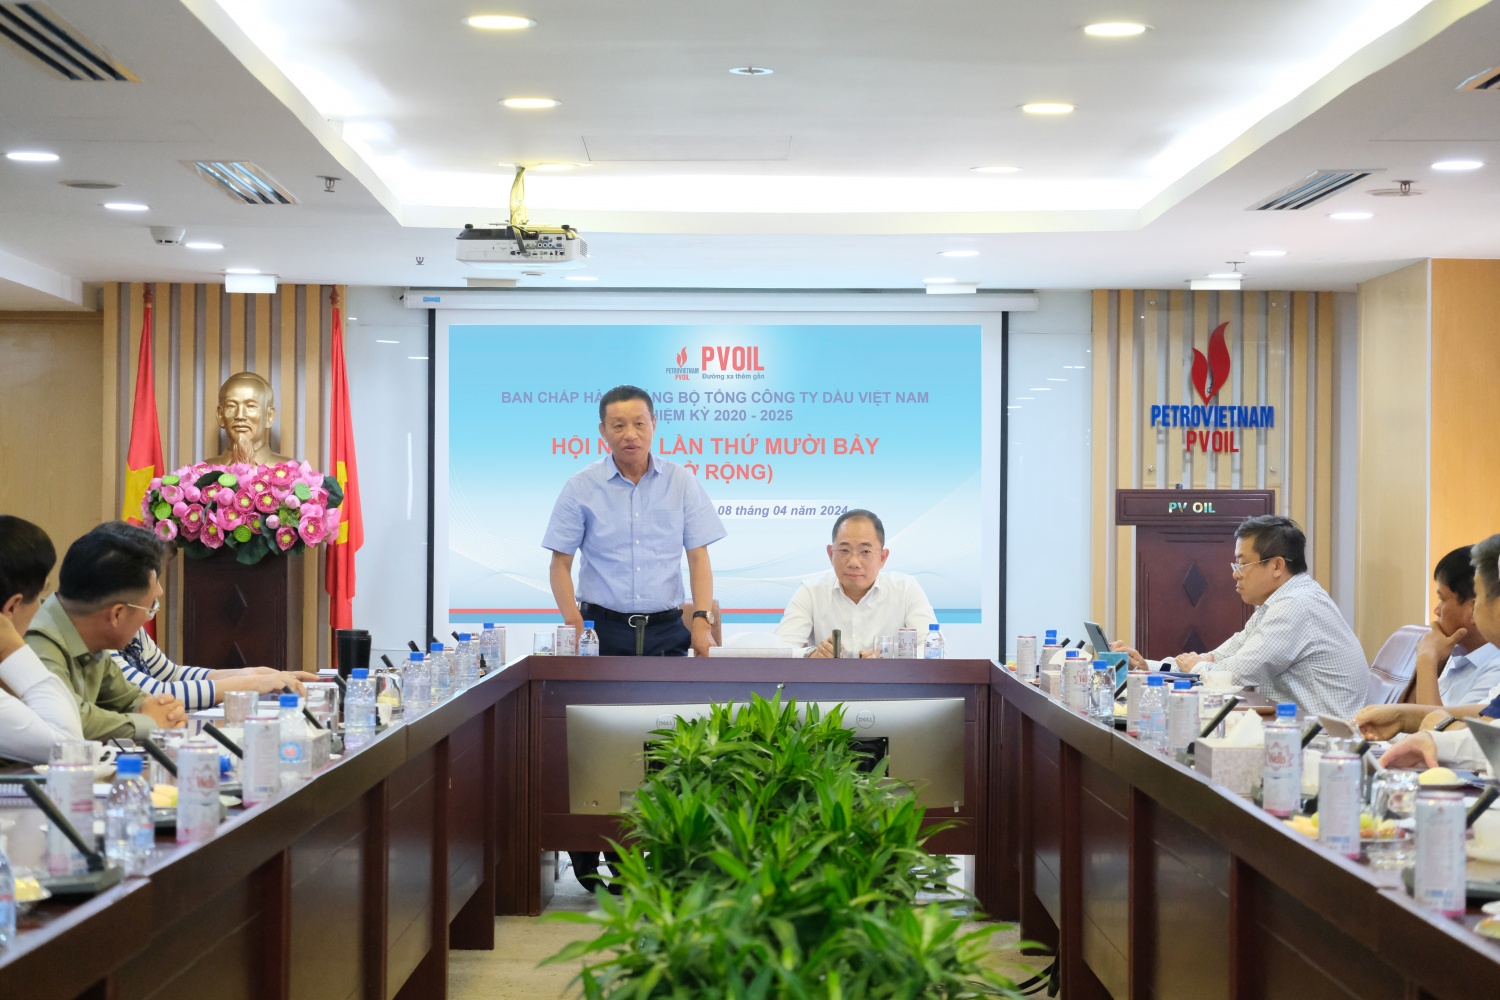 Đồng chí Đoàn Văn Nhuộm – Phó Bí thư Đảng ủy, Tổng Giám đốc Tổng công ty kết luận về hoạt động SXKD